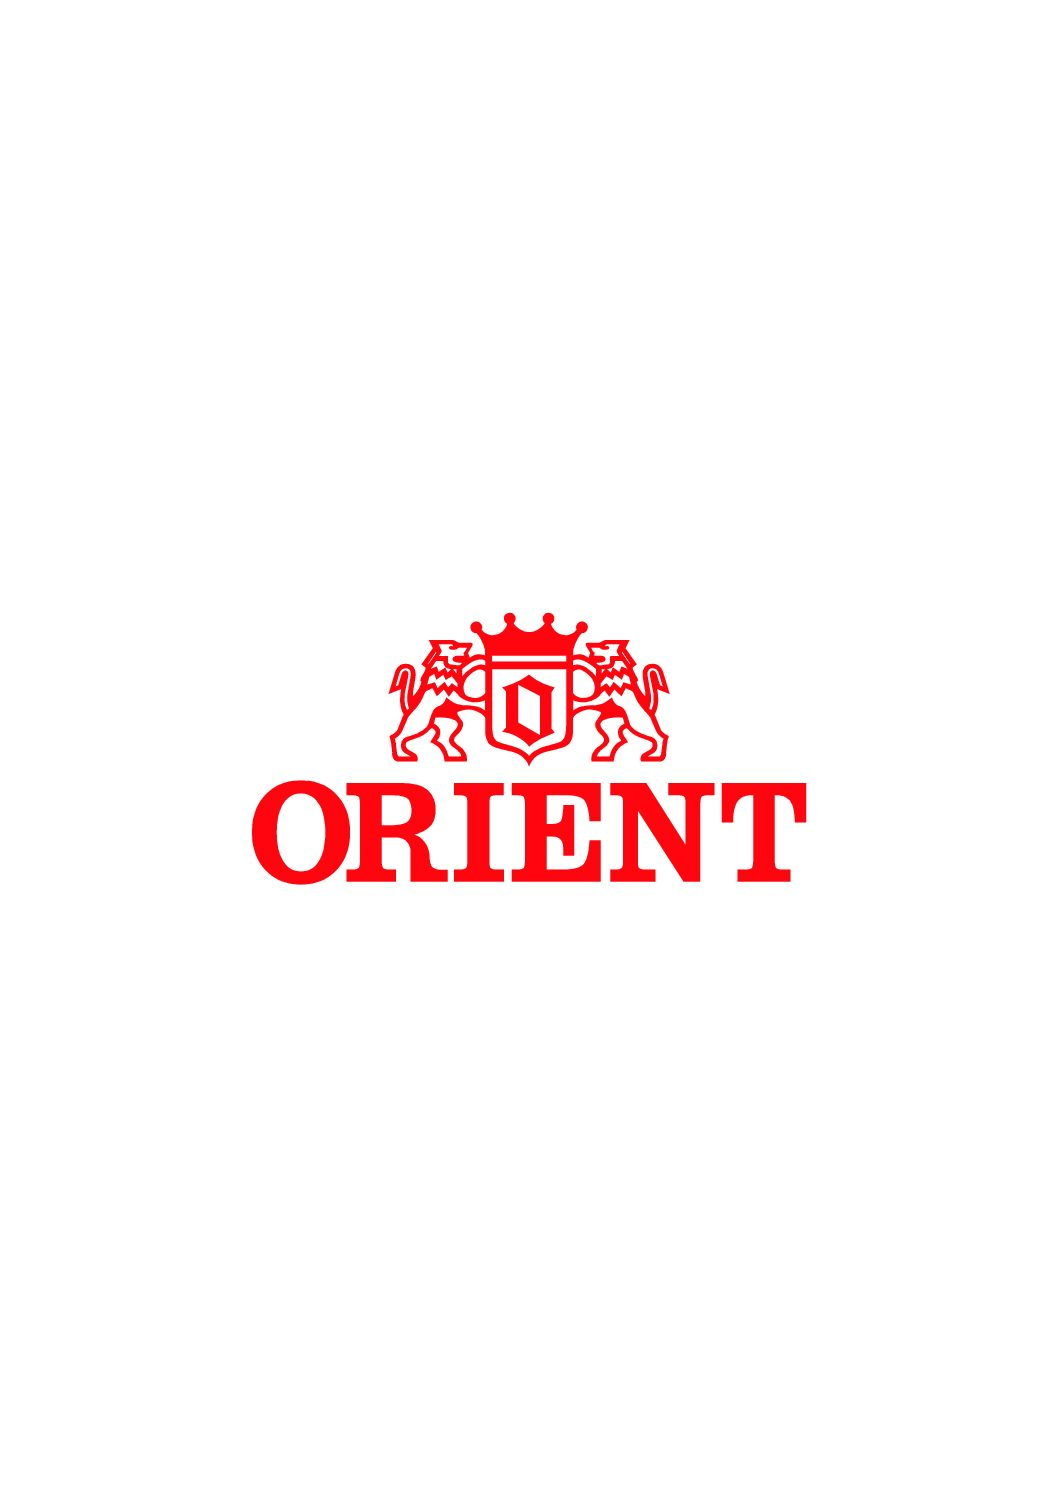 orient logo design | Logo design, Graphic design illustration, Design